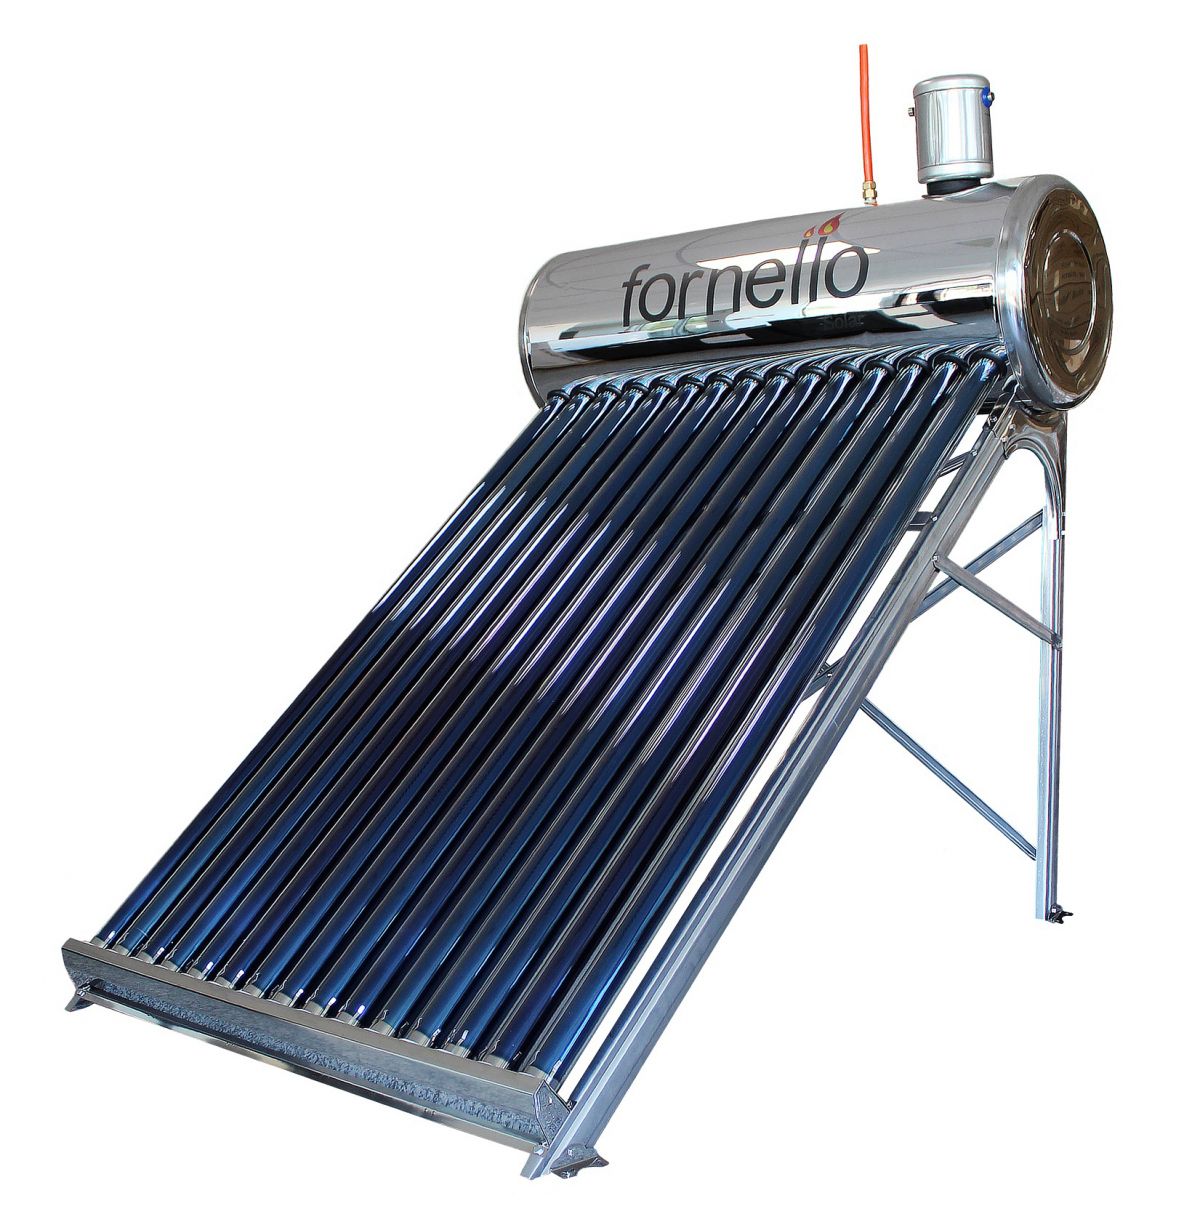 Panou solar nepresurizat Fornello pentru producere apa calda, cu